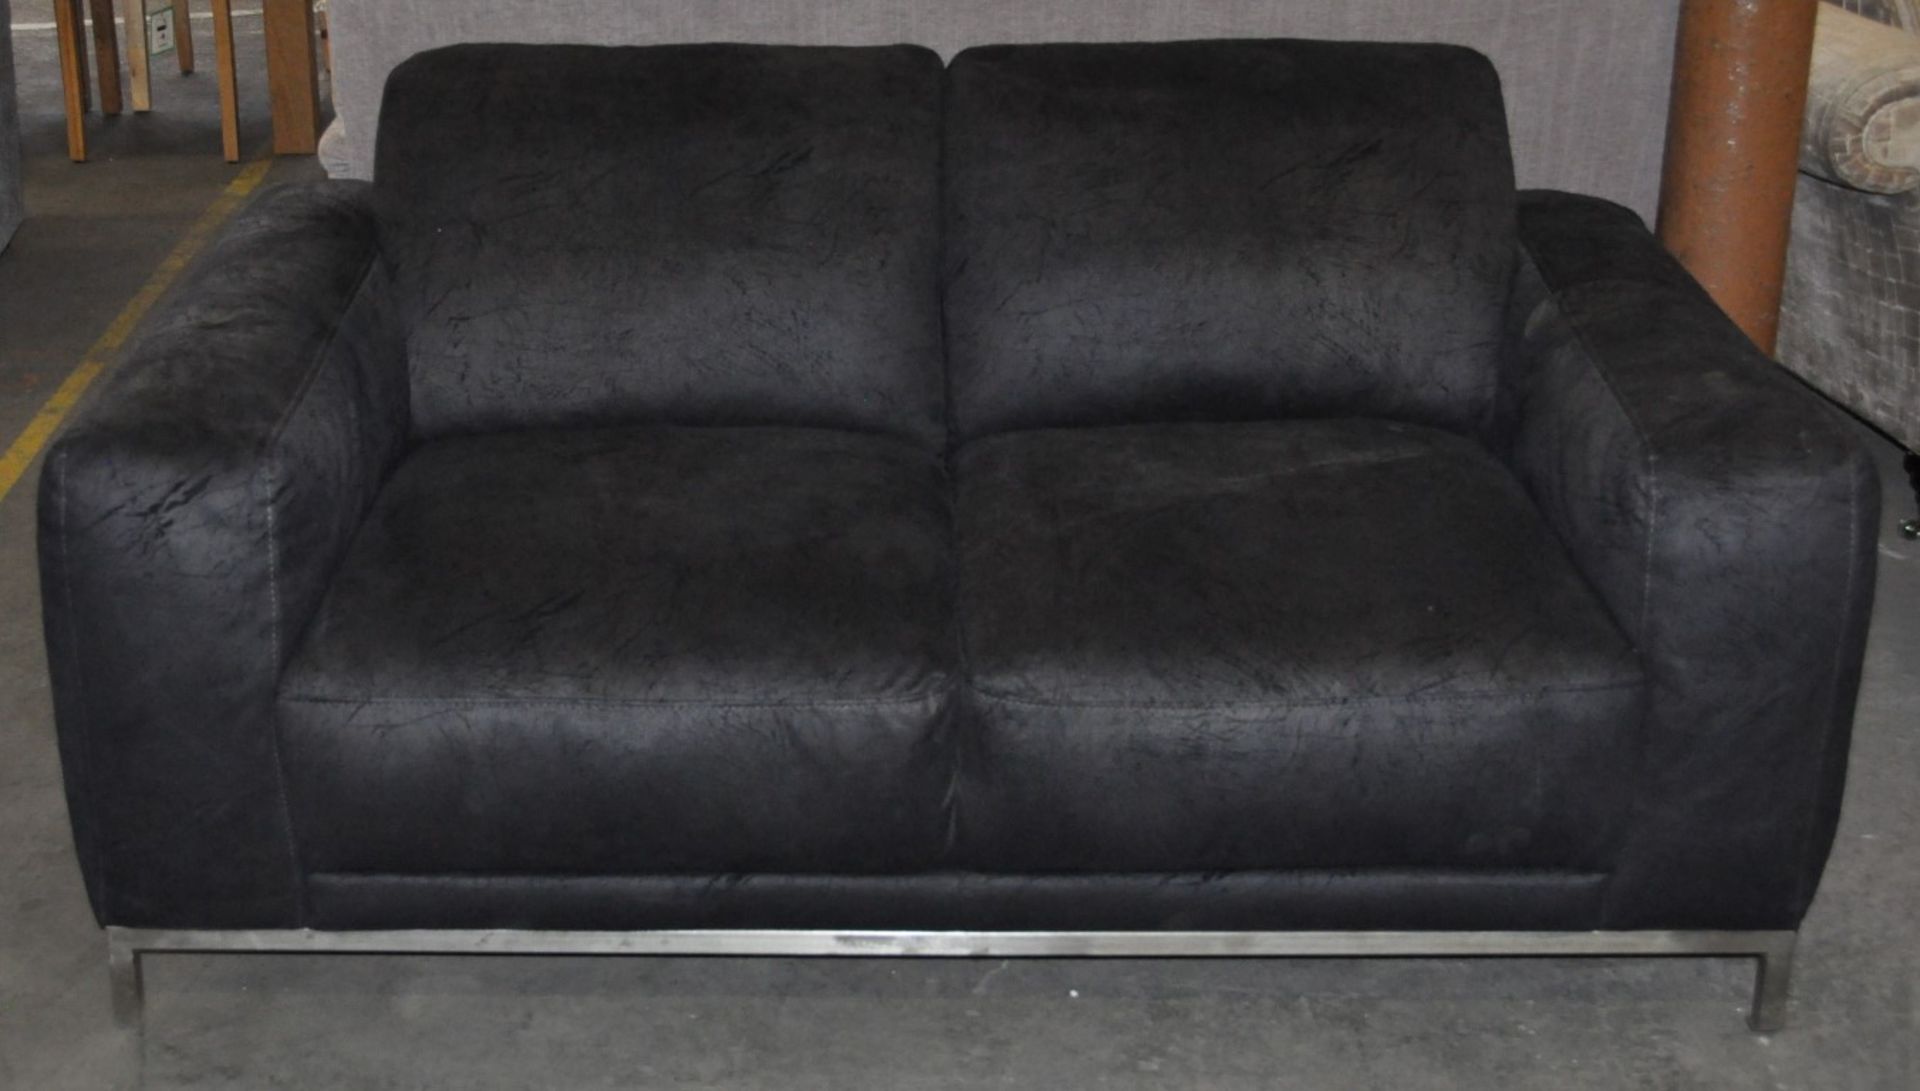 1 x Valetta Crackle Fabric Sofa – Dimension : 170x100x80cm – Ex Display - CH281 - CL050 – Location :